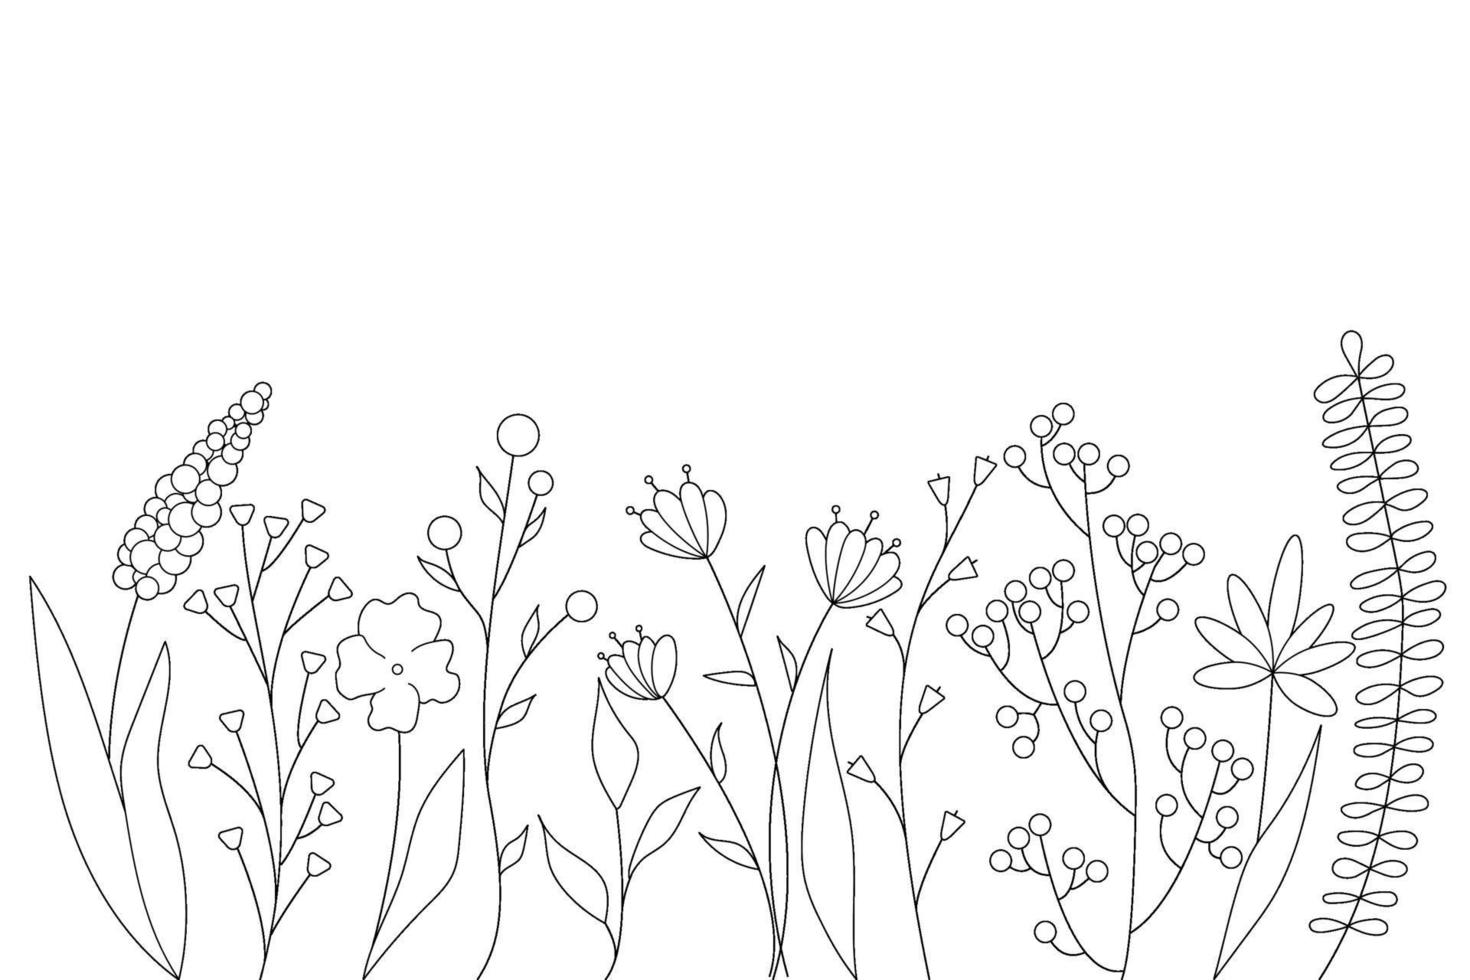 siluetas negras de hierba, flores y hierbas. elementos florales simples  minimalistas. botánico natural. boceto gráfico. flores dibujadas a mano.  diseño para redes sociales. contorno, línea, estilo doodle. 2275921 Vector  en Vecteezy